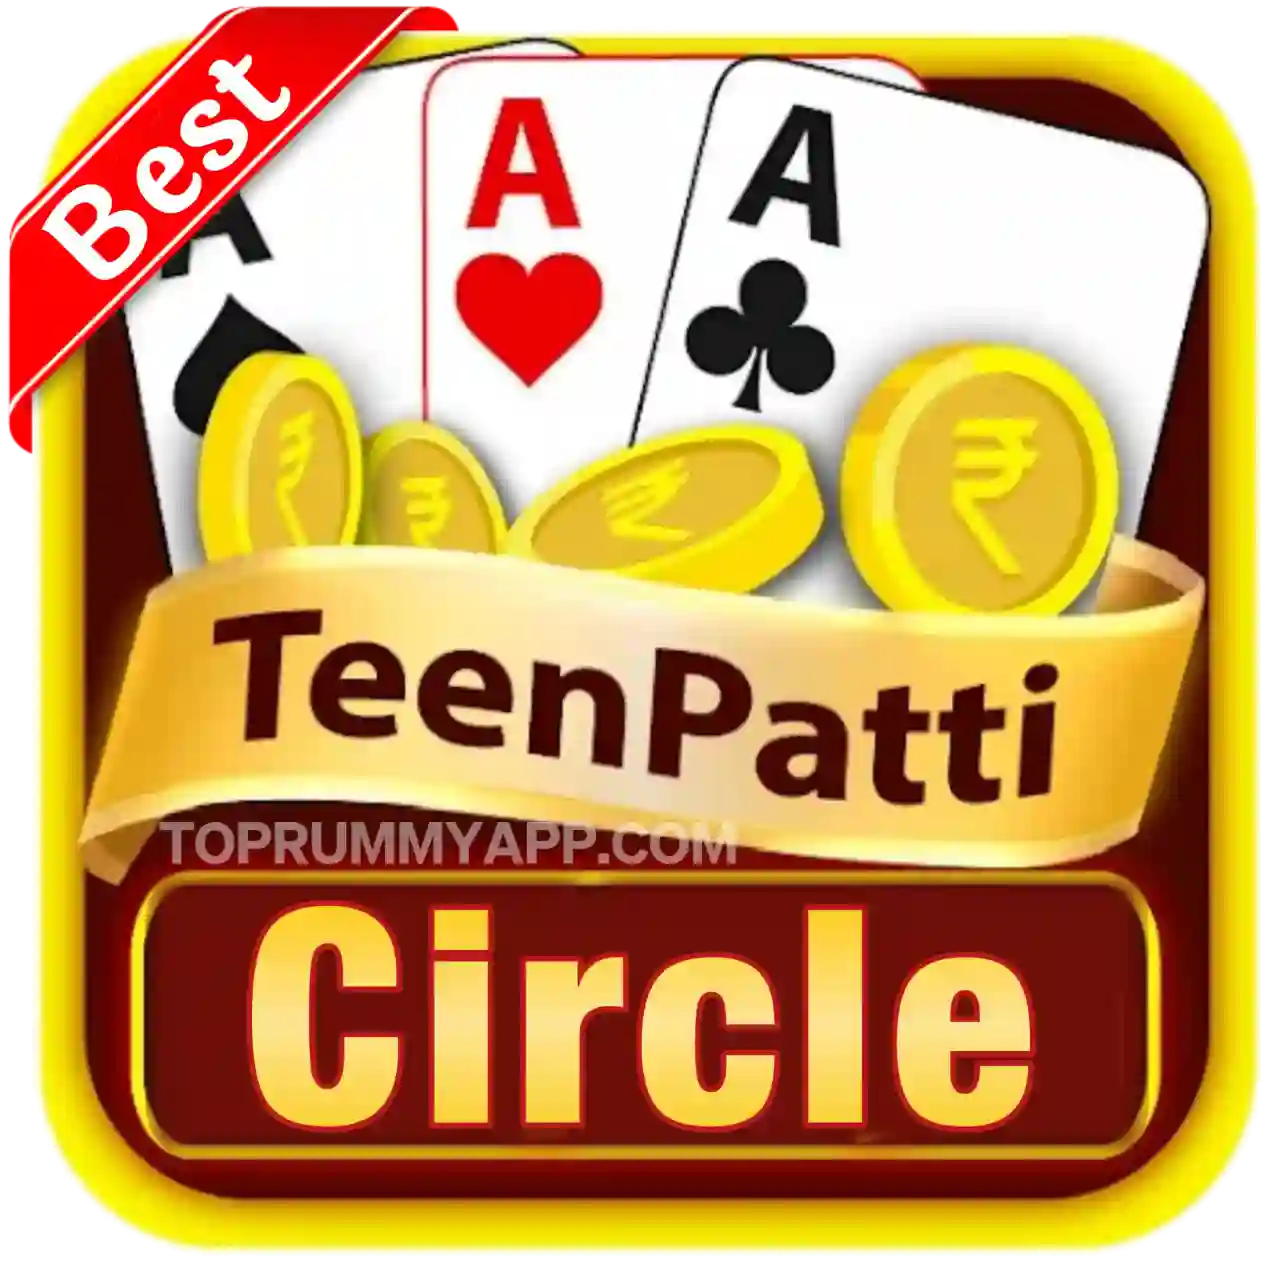 Teen Patti Circle Apk Download - All Teen Patti App List 31 Bonus